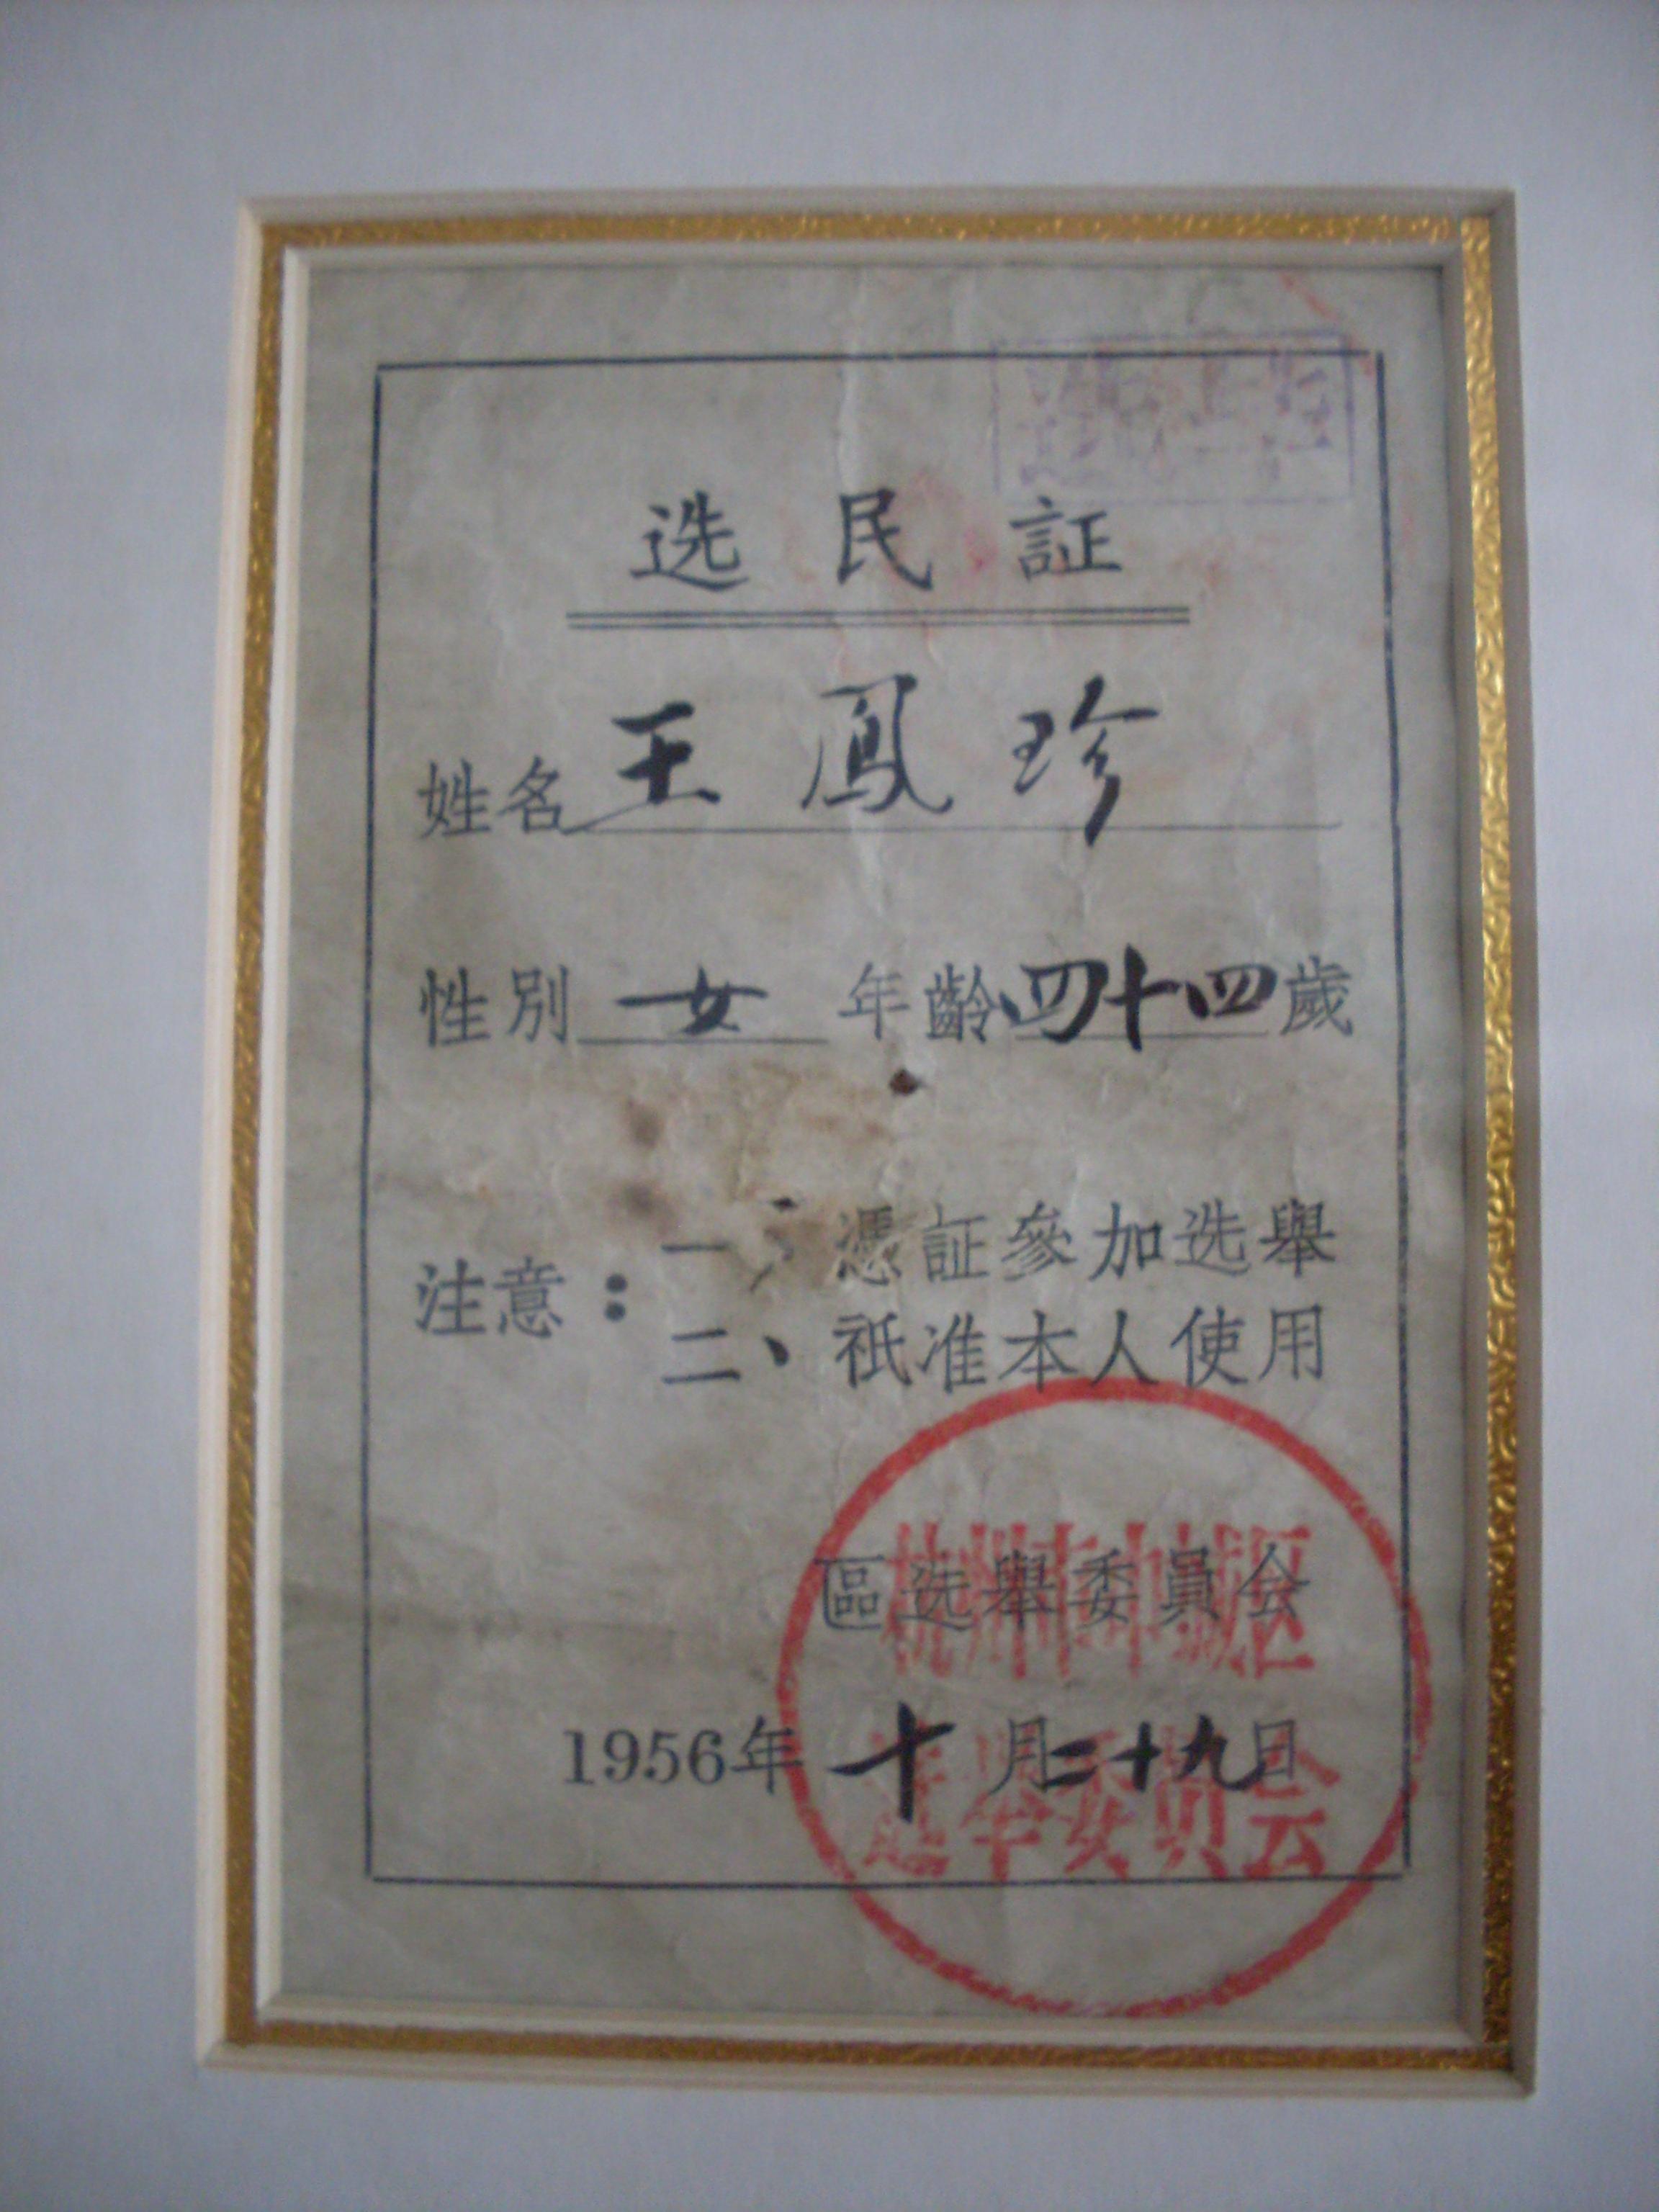 中策獎狀博物館藏1956年中城區選民證